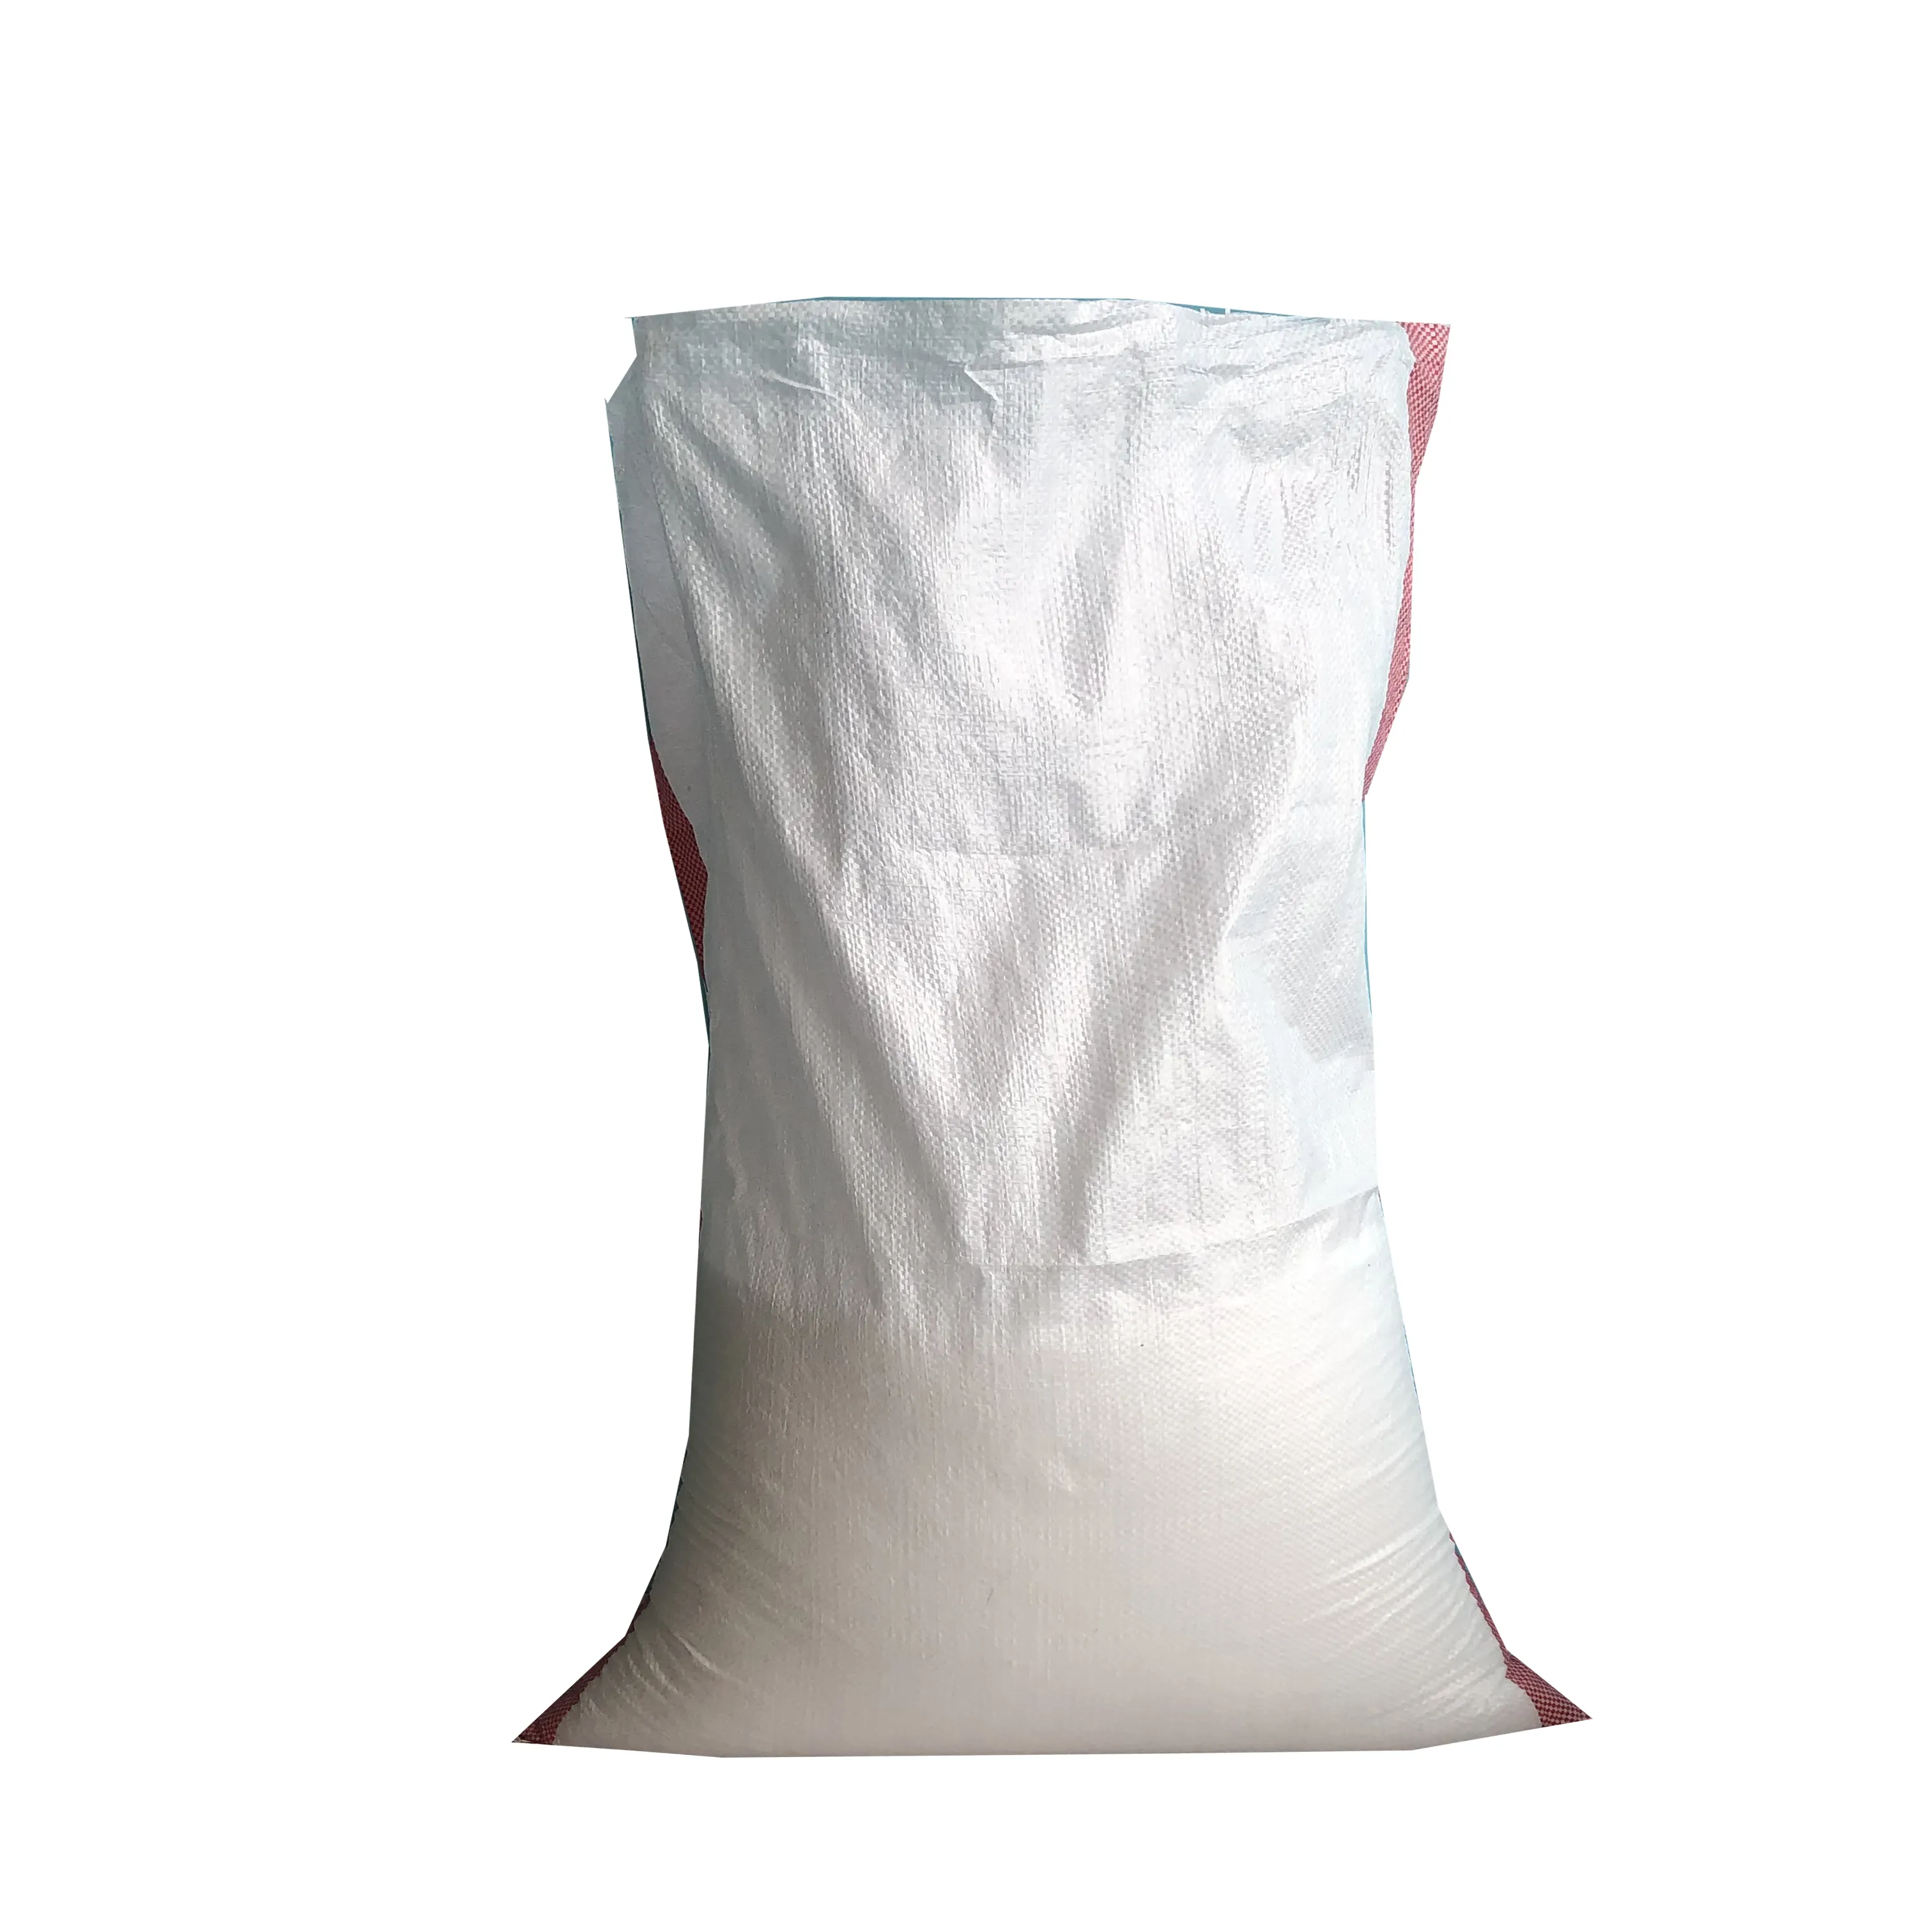 Sıcak satış 25kg 50kg 100kg Saco De rarice plastik polipropilen pirinç tahıl buğday mısır fasulye paketleme için PP dokuma çanta çuval kullanılan